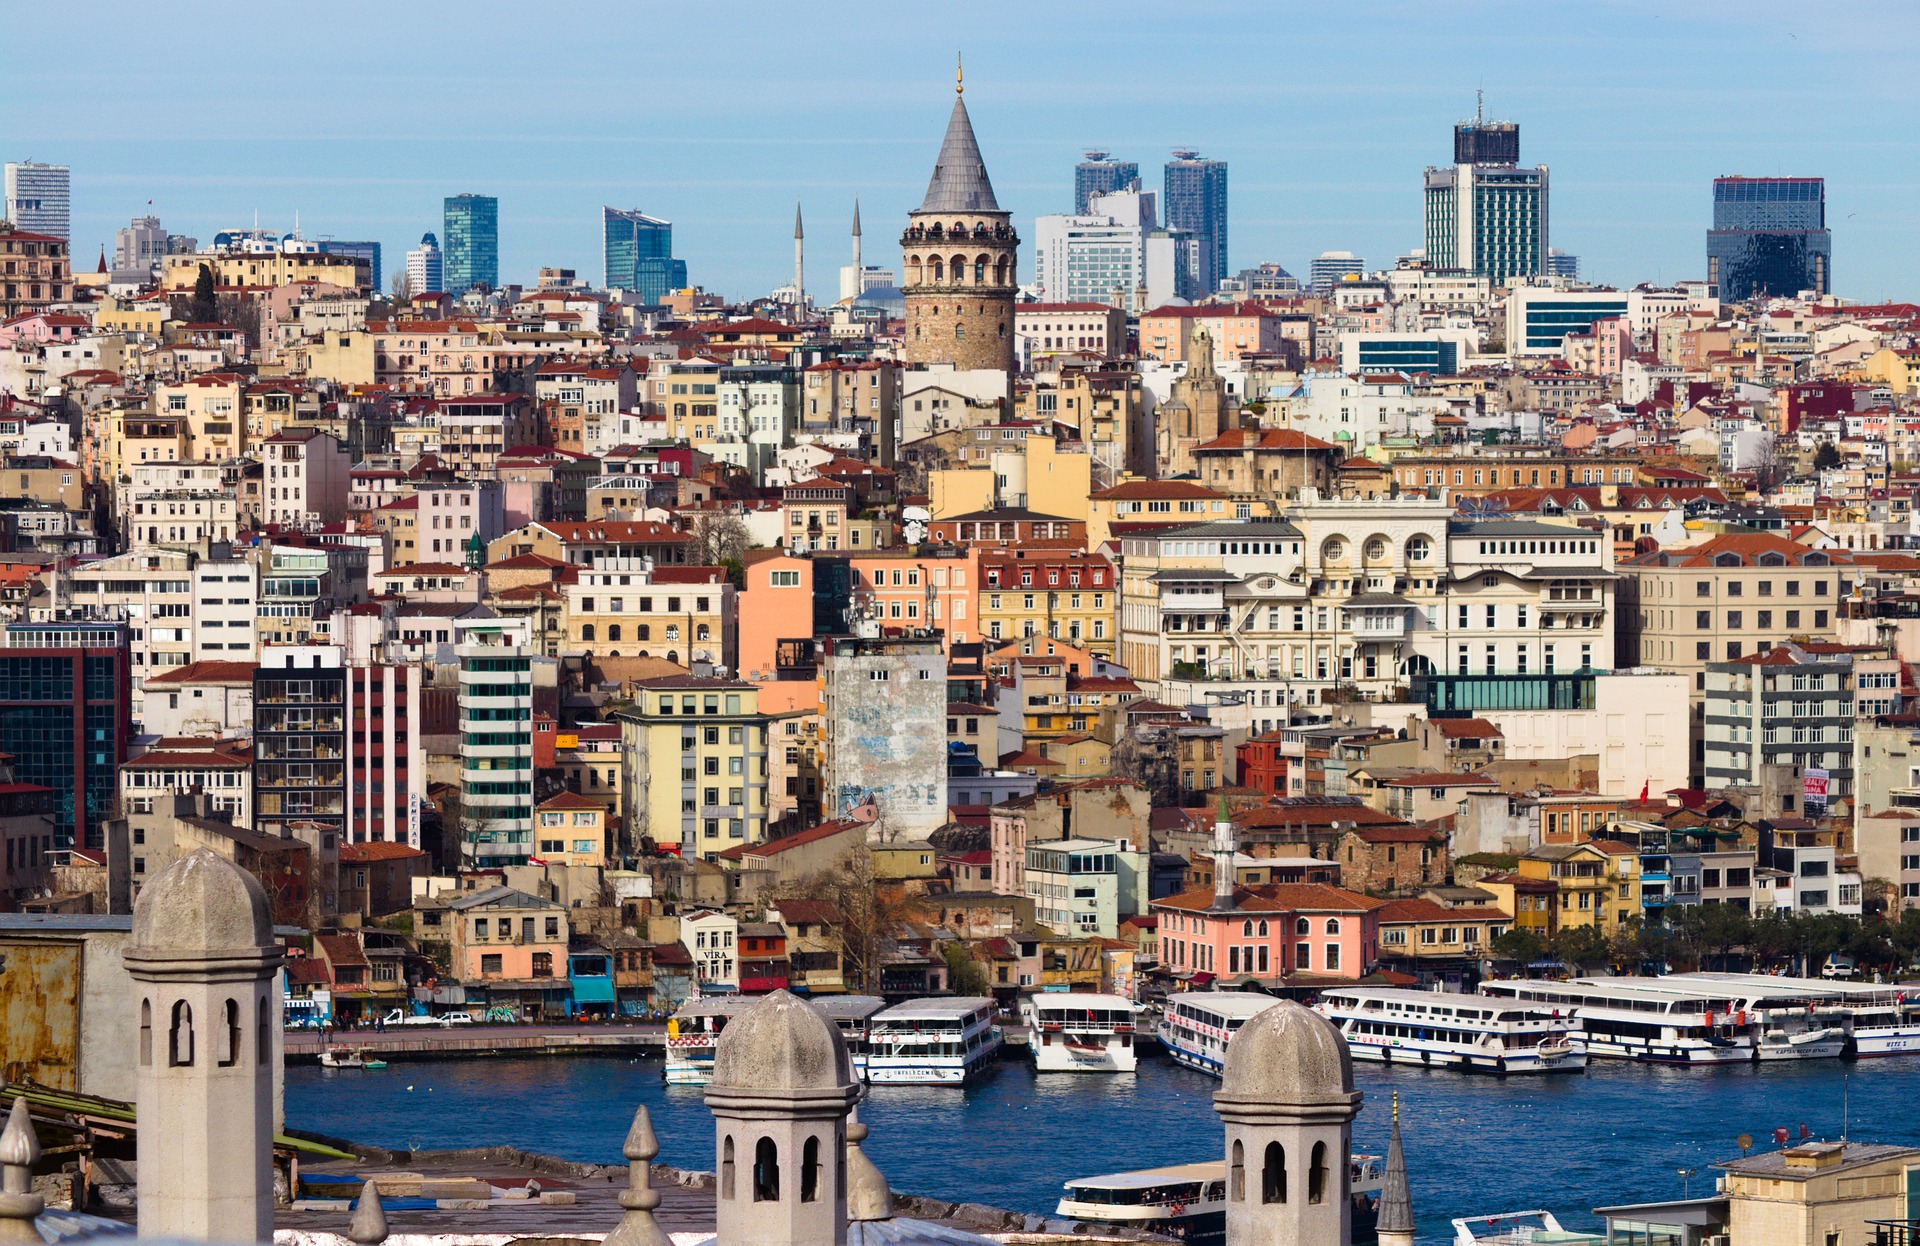 Vești proaste pentru turiștii românii care merg în Turcia. A fost introdusă o taxă controversată